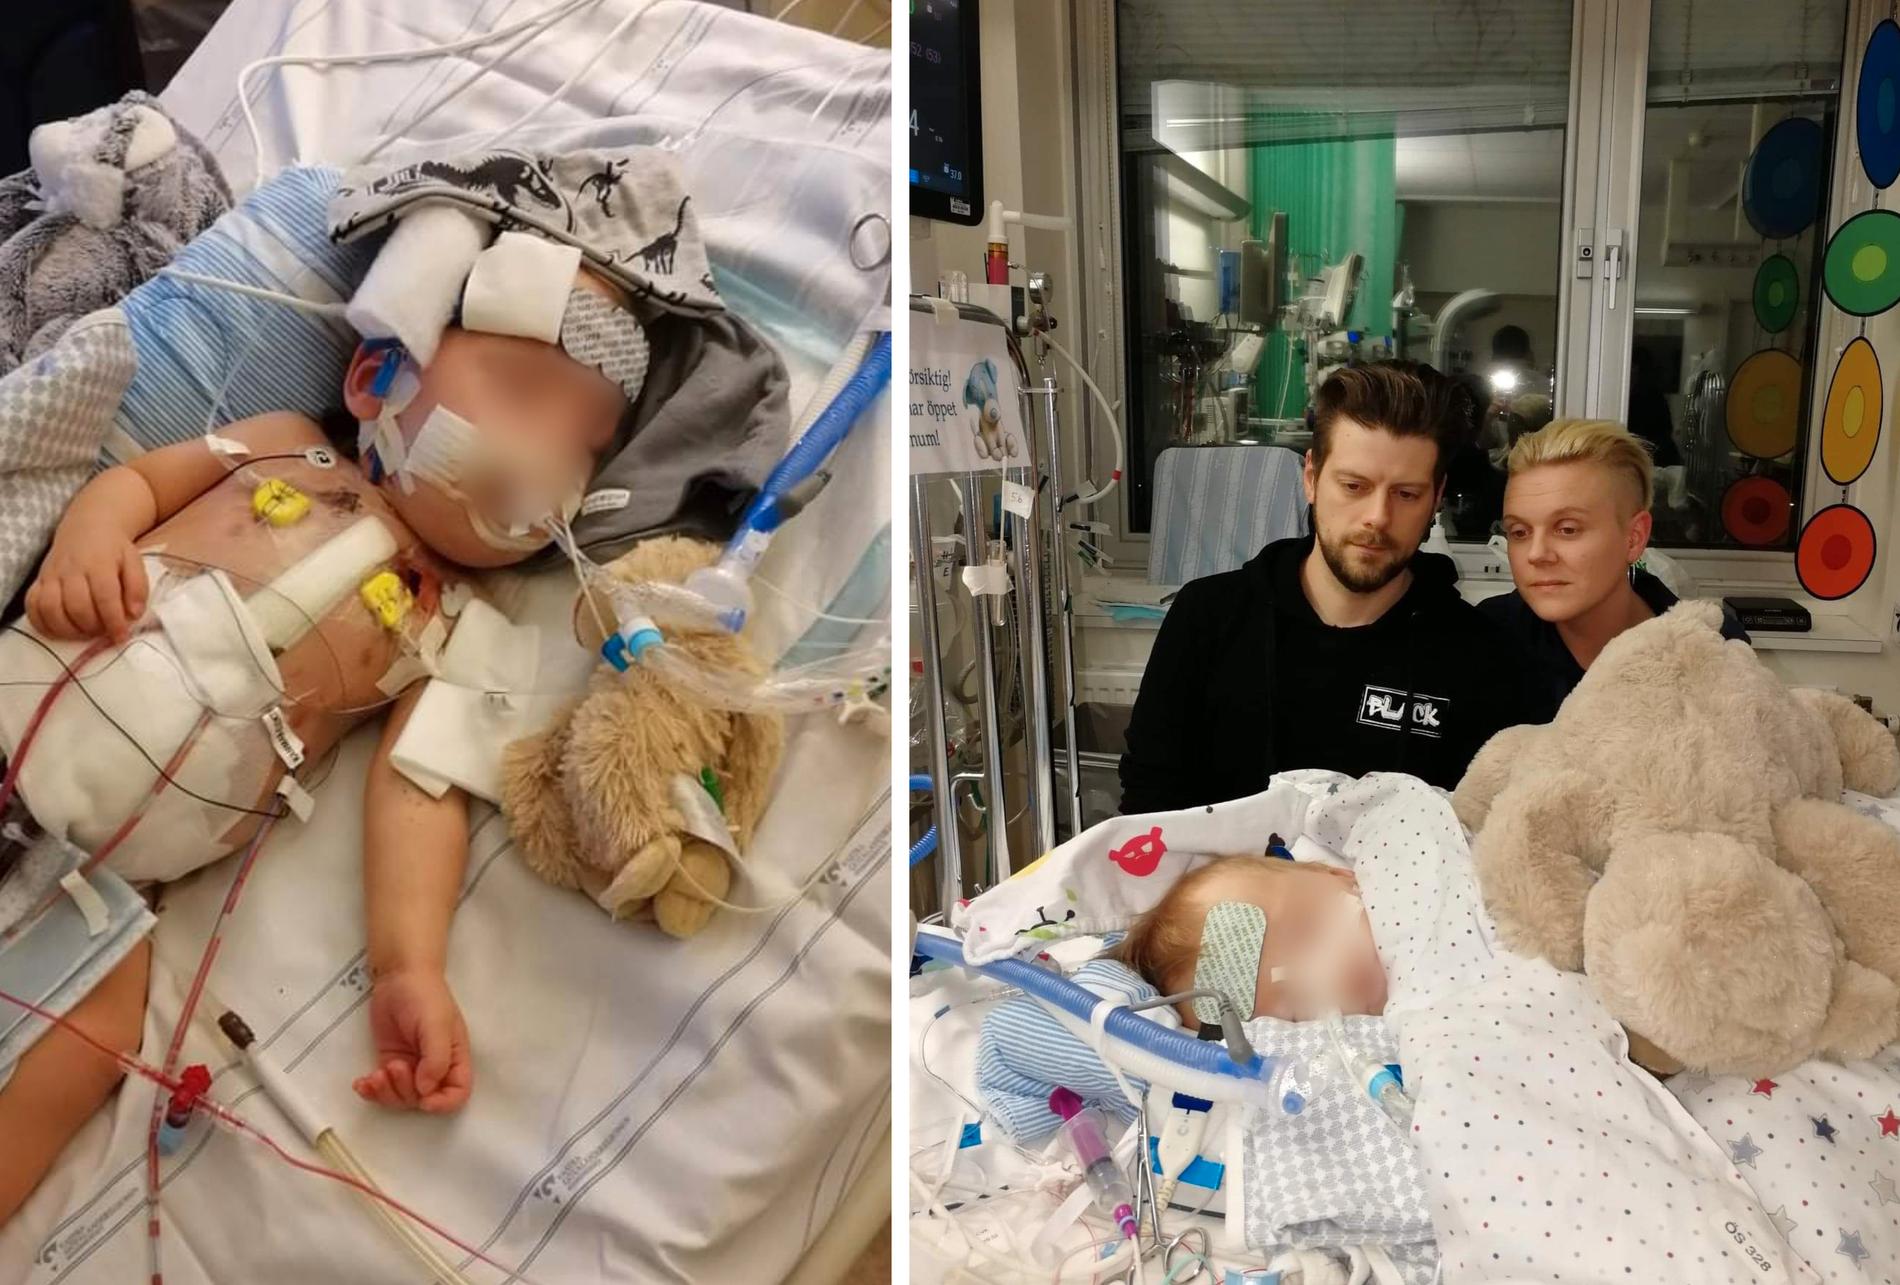  Peter Eriksen och Caroline Barthelson vid sonen Tims sjukhussäng. Endast ett hjärtbyte kan rädda hans liv på sikt.